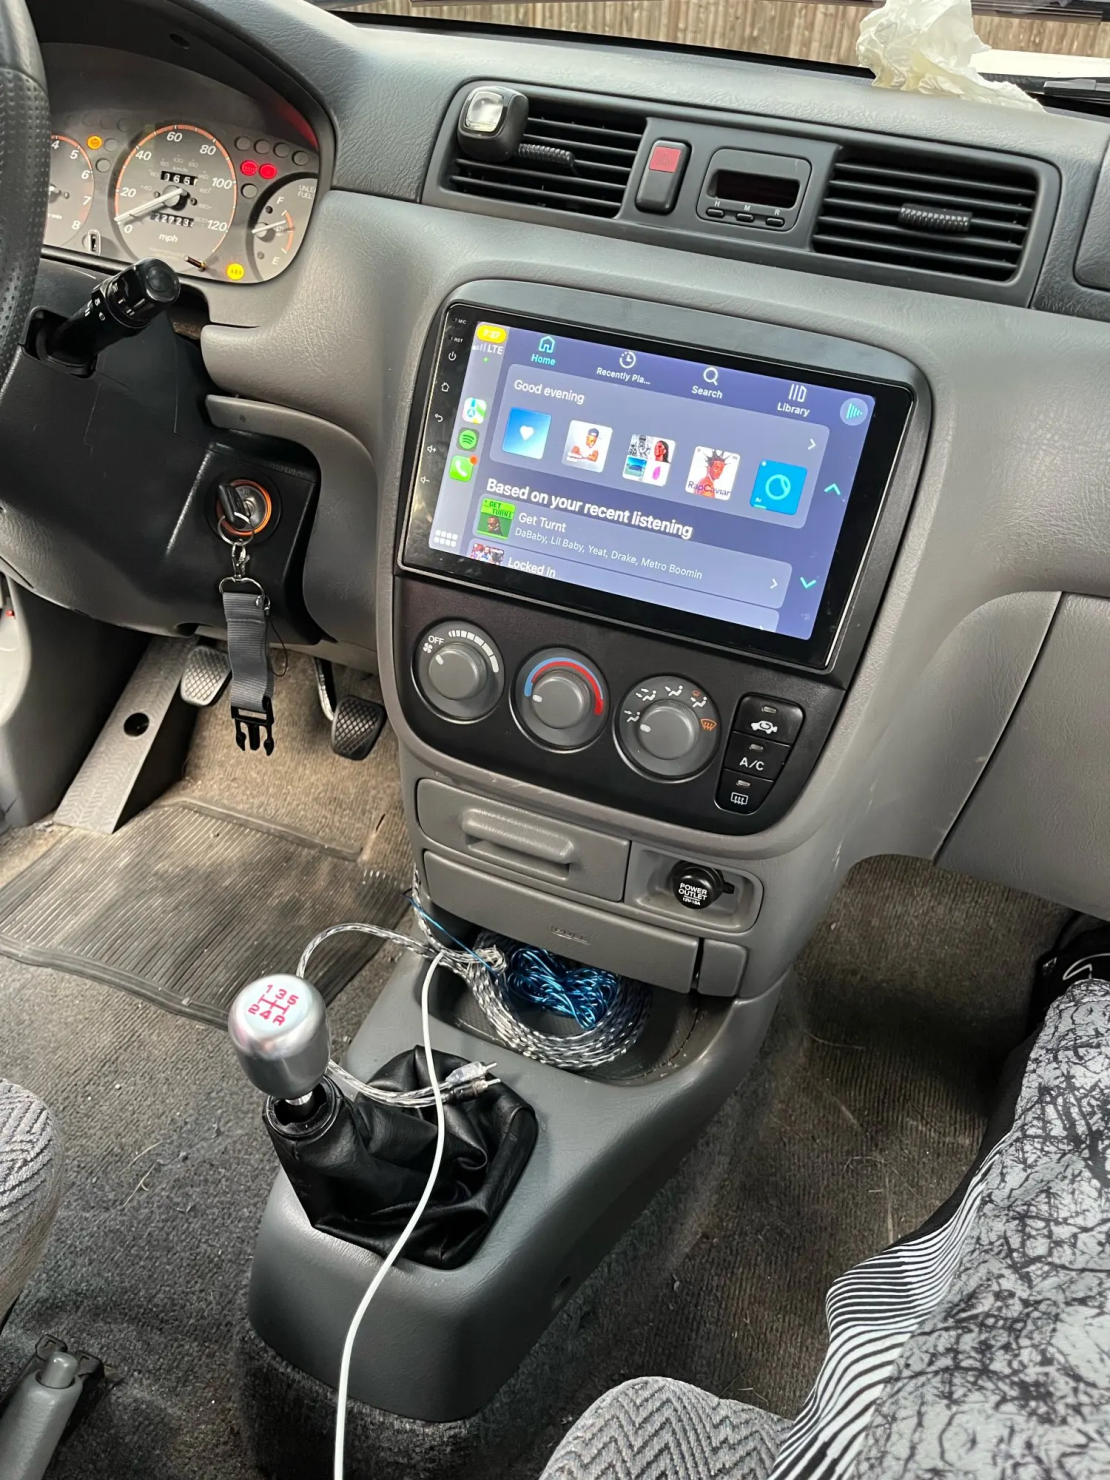 Honda CRV 1996-2001 Android Multimedia/Navigation